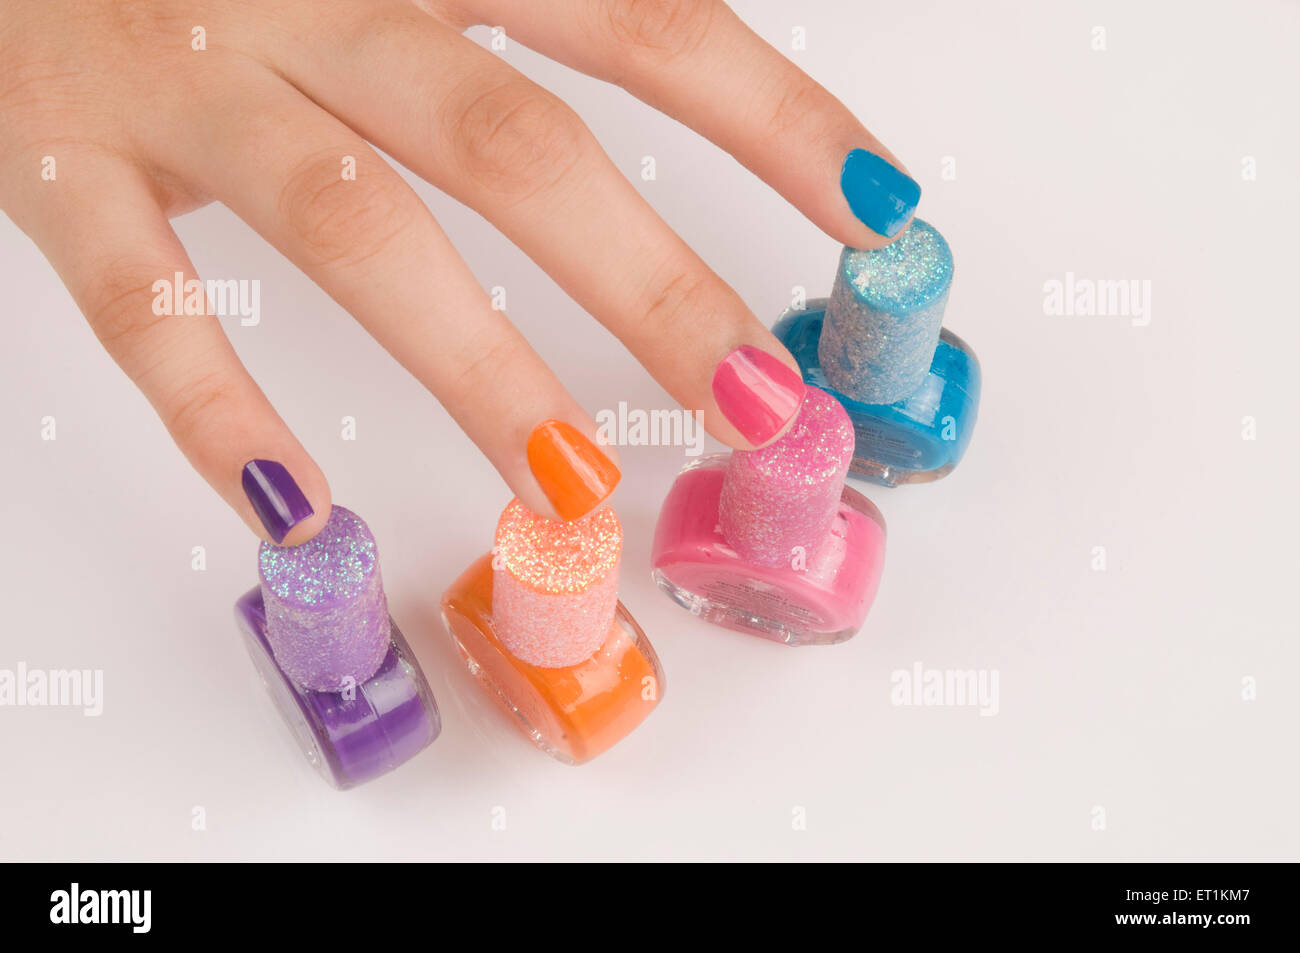 doigts avec des bouteilles de vernis à ongles de différentes couleurs Banque D'Images